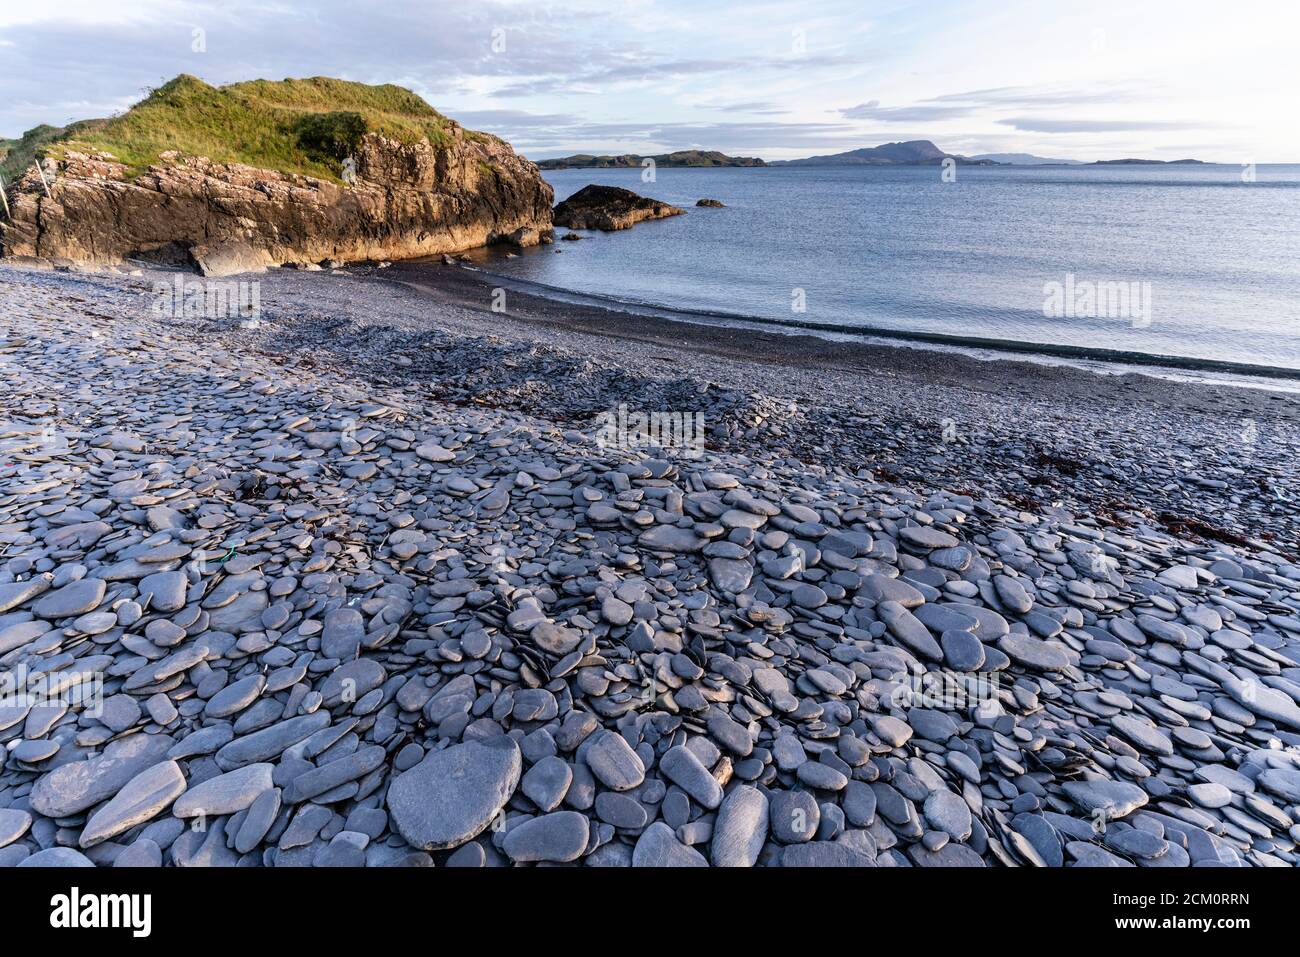 Der einzigartige Schieferstrand von Ellenabeich auf der Insel Seil, Argyll, Schottland, wo ein ehemaliger Schieferbruch ein Wellenbrecher und eine Lagune schuf. Ort der Steinabsauen Stockfoto